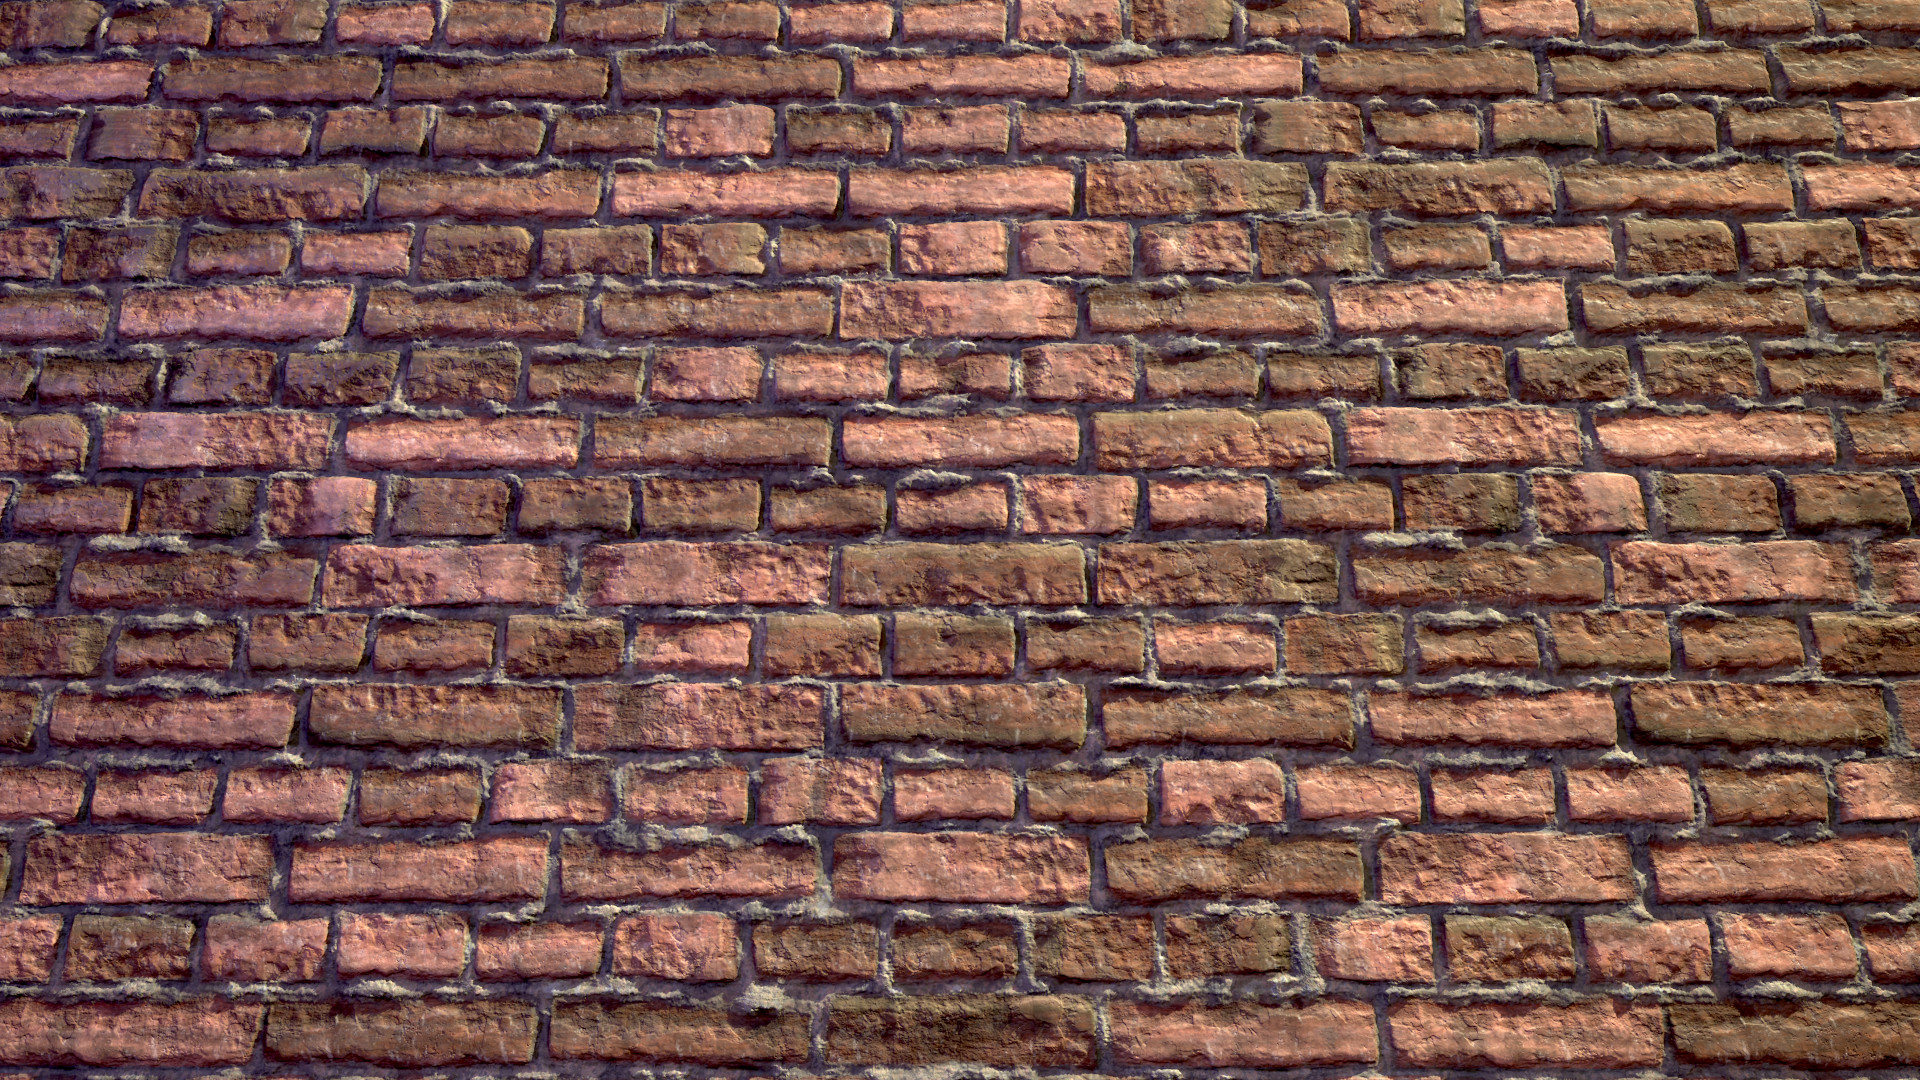 ArtStation - Damaged Brick Wall - Multi Material - Substance ...